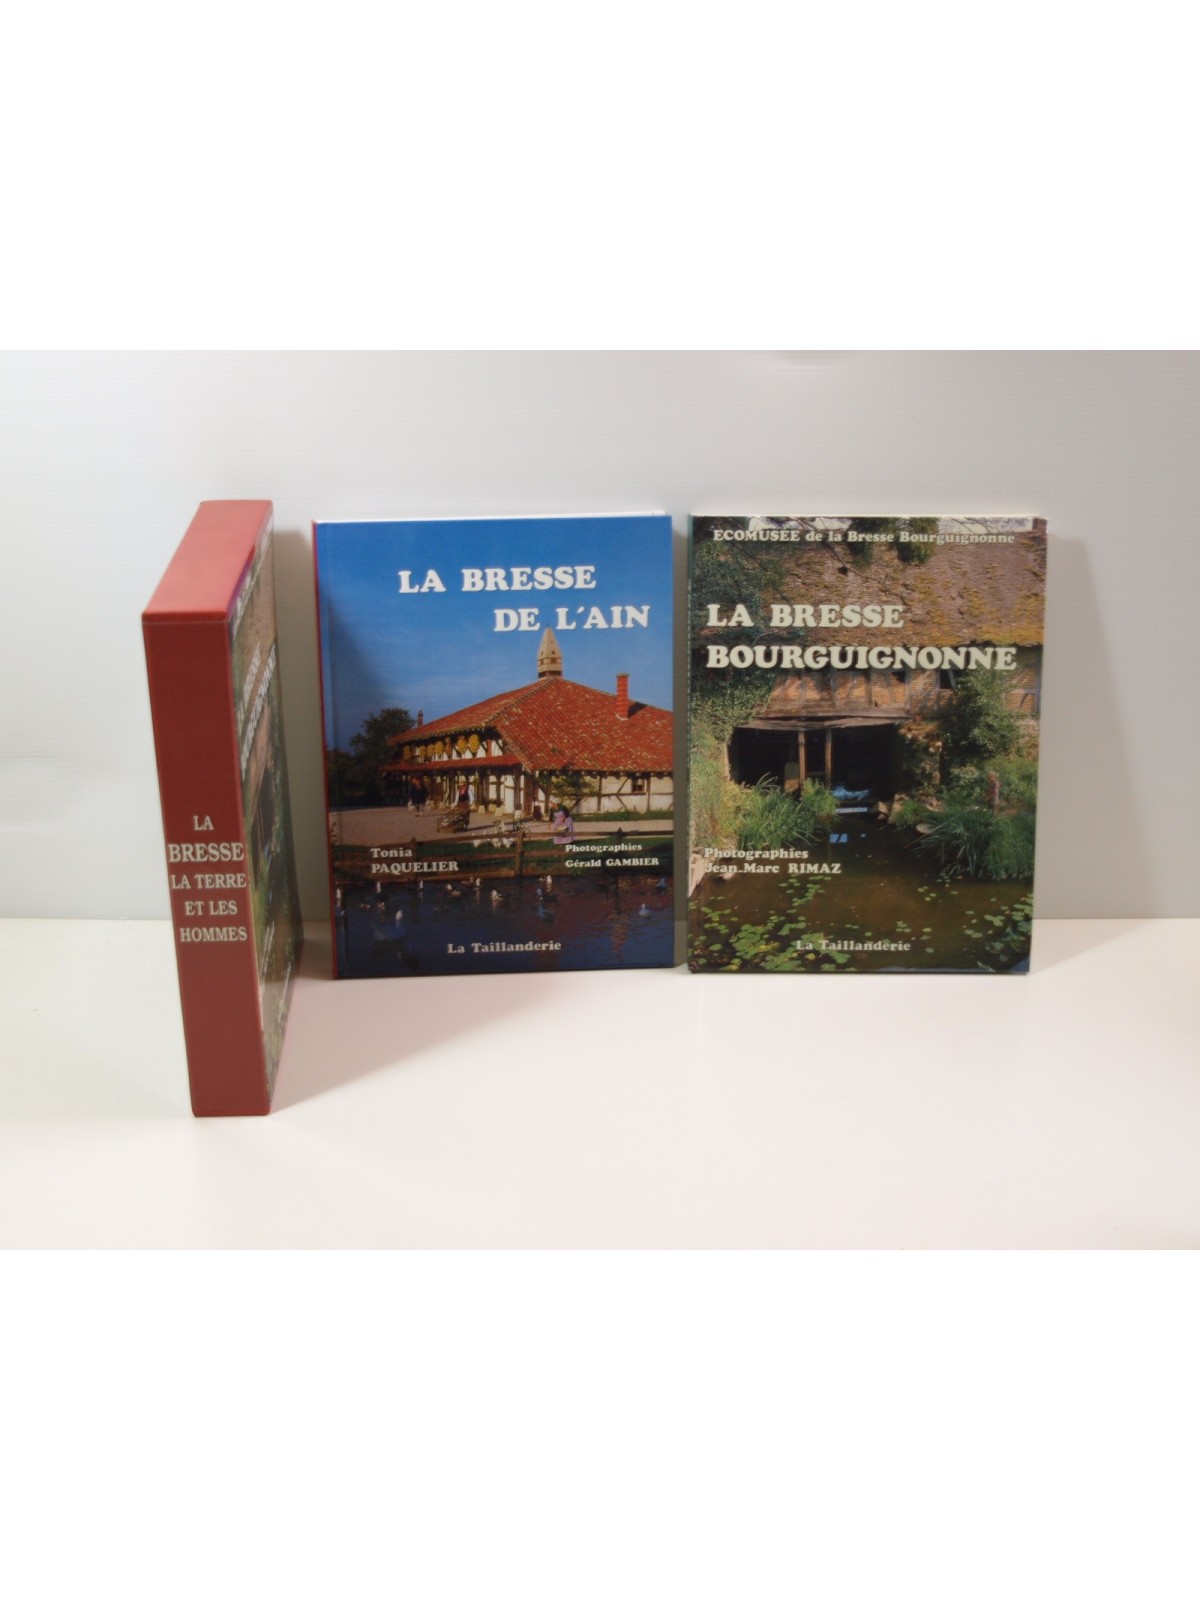 La Bresse bourguignonne - La Bresse de l'Ain. Coffret 2 volumes